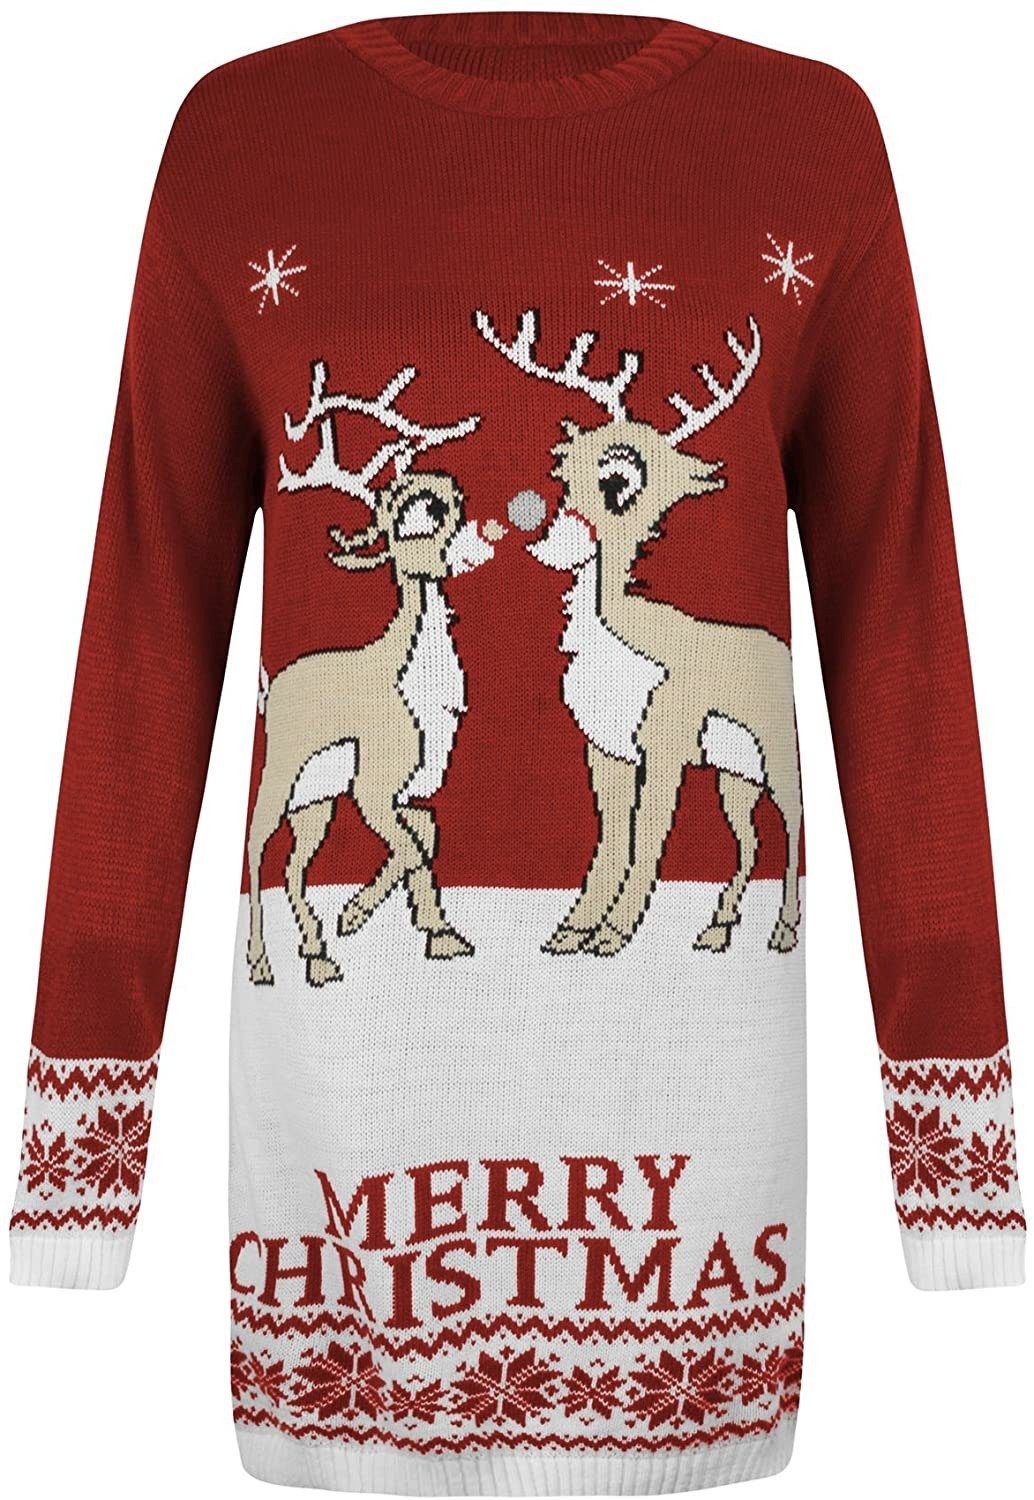 Worldclassca Weihnachtspullover »Worldclassca Christmas Pullover Sweater  Weihnachtspullover Pulli« online kaufen | OTTO